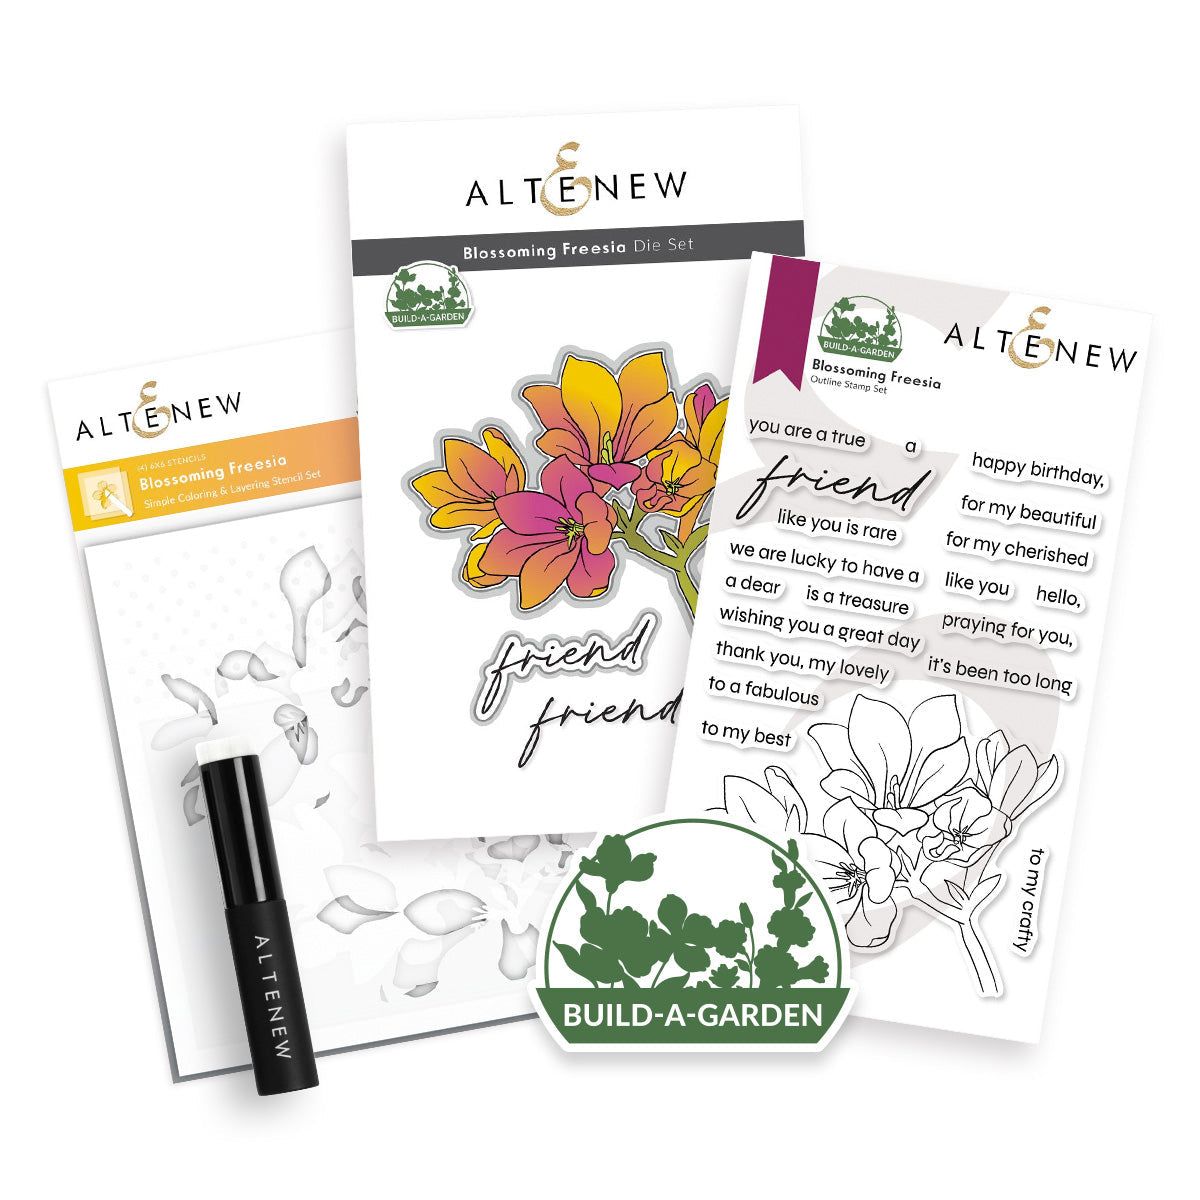 Altenew - Build-A-Garden: Blossoming Freesia